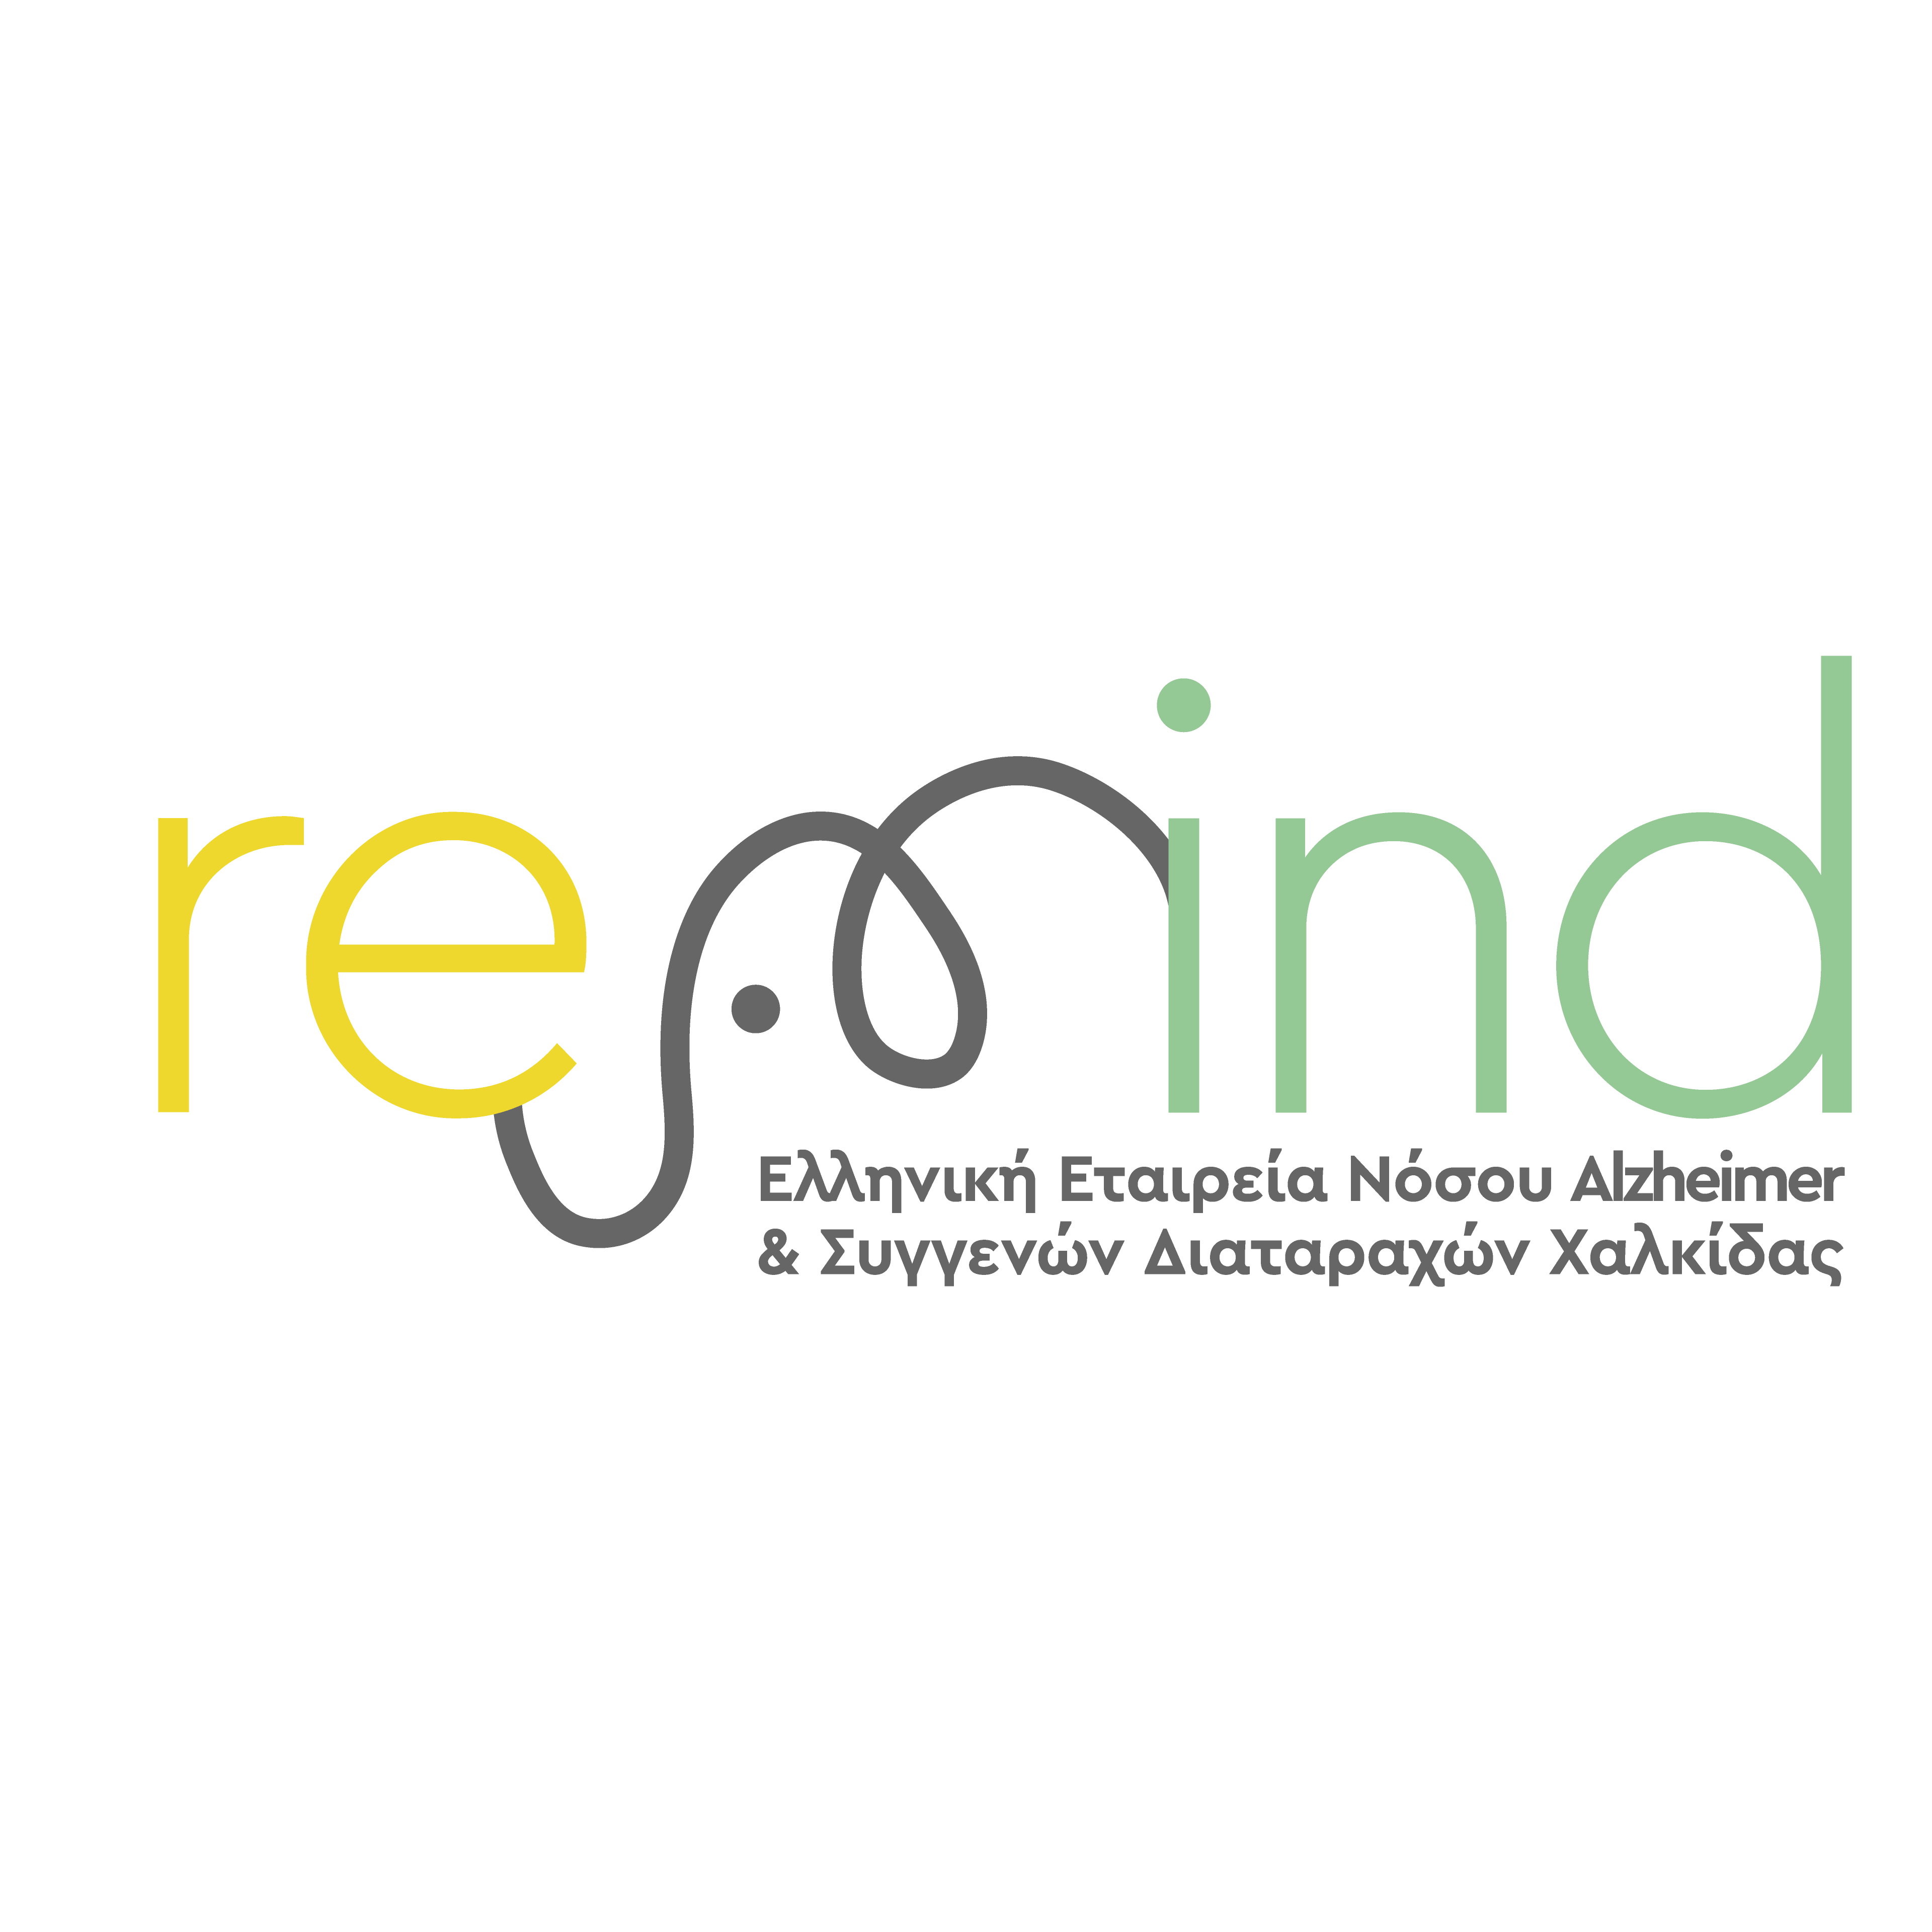 REMIND - Ελληνική Εταιρεία Νόσου Alzheimer και Συγγενών Διαταραχών Χαλκίδας - Λογότυπο